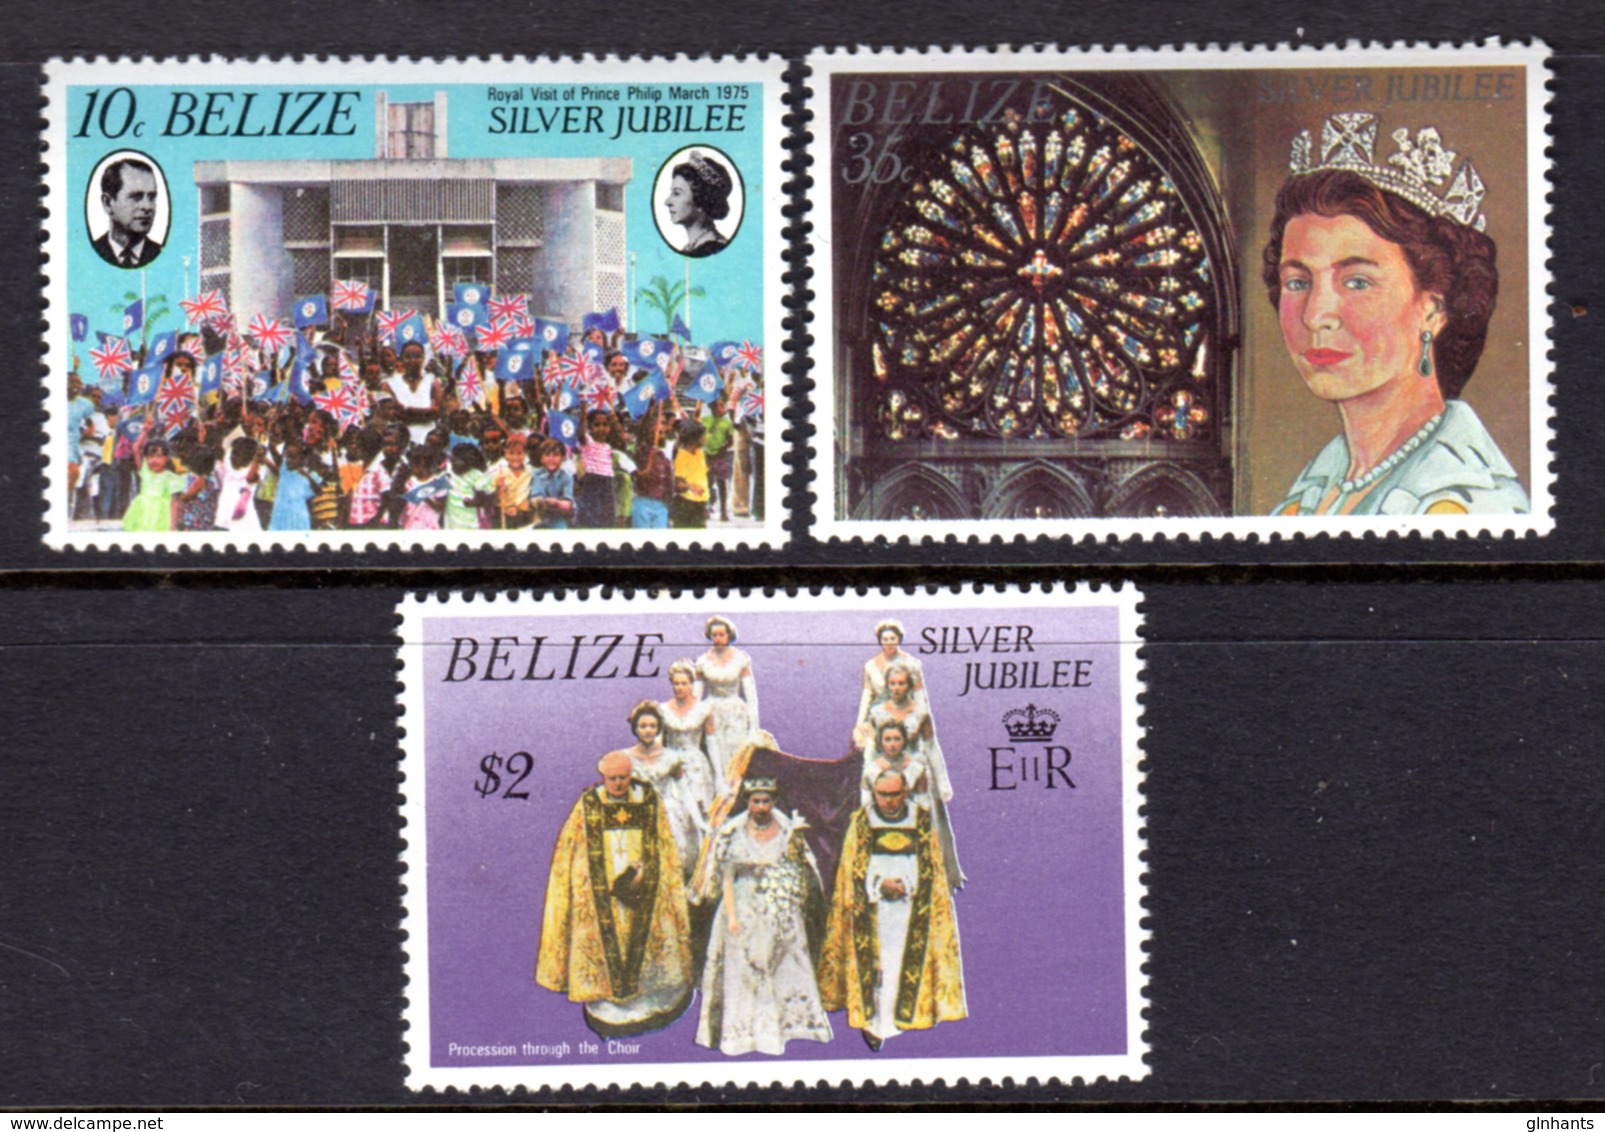 BELIZE - 1977 SILVER JUBILEE SET (3V) FINE MNH ** SG 449-451 - Belize (1973-...)